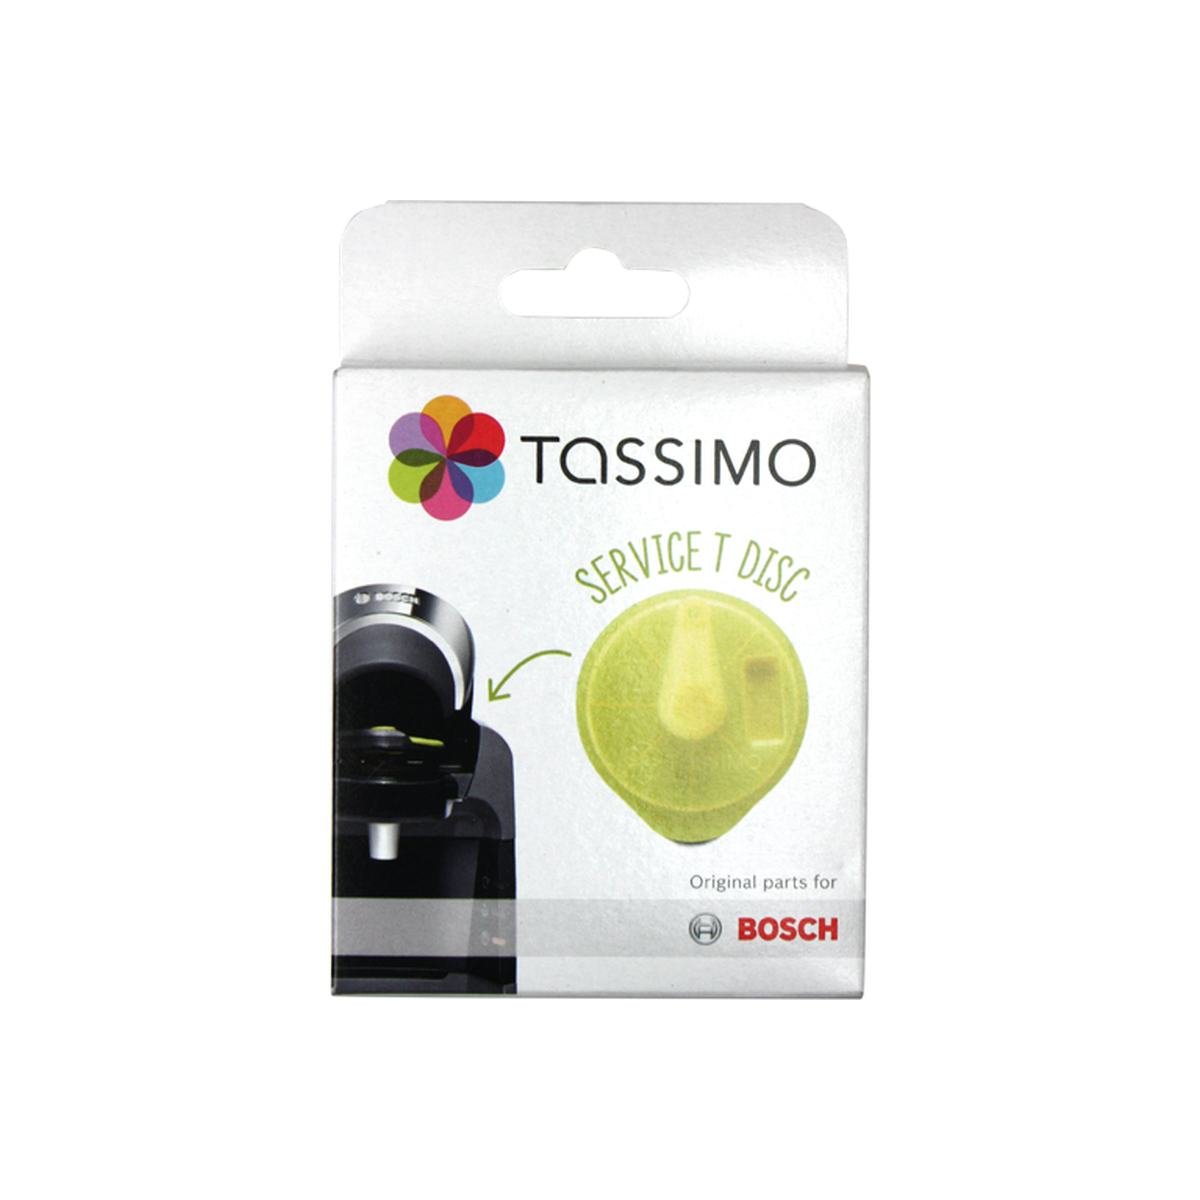 Service T-disc gul til Tassimo kaffemaskiner